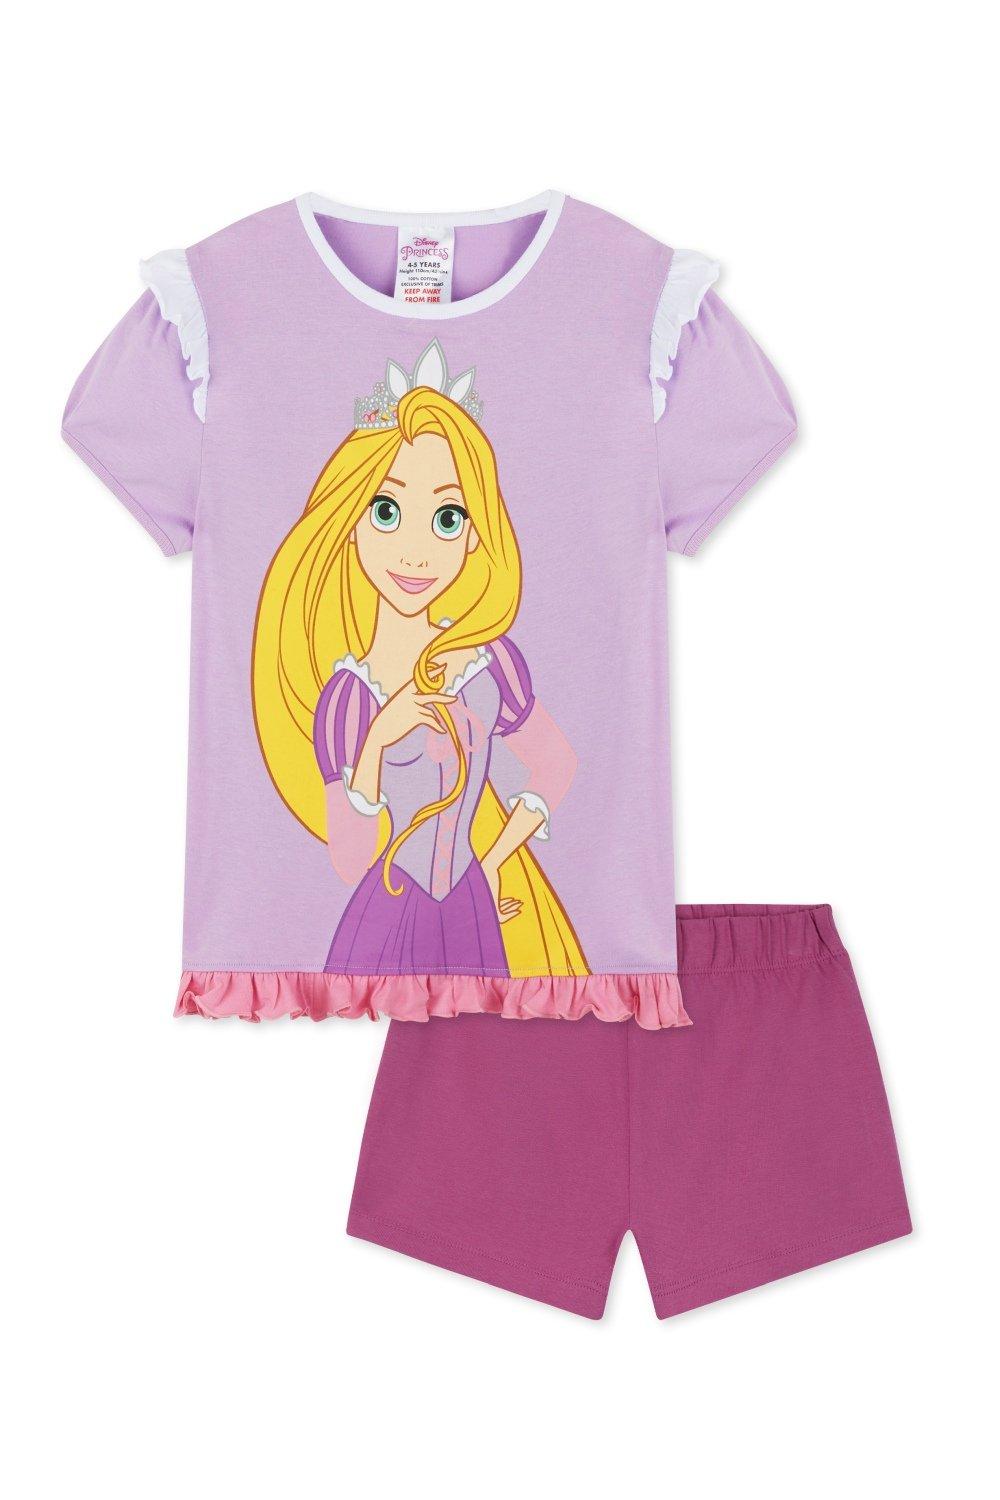 Короткая пижама Рапунцель Disney, мультиколор стильные летние комплекты размера плюс disney с аниме король лев simba домашняя одежда винни пух пижамные комплекты